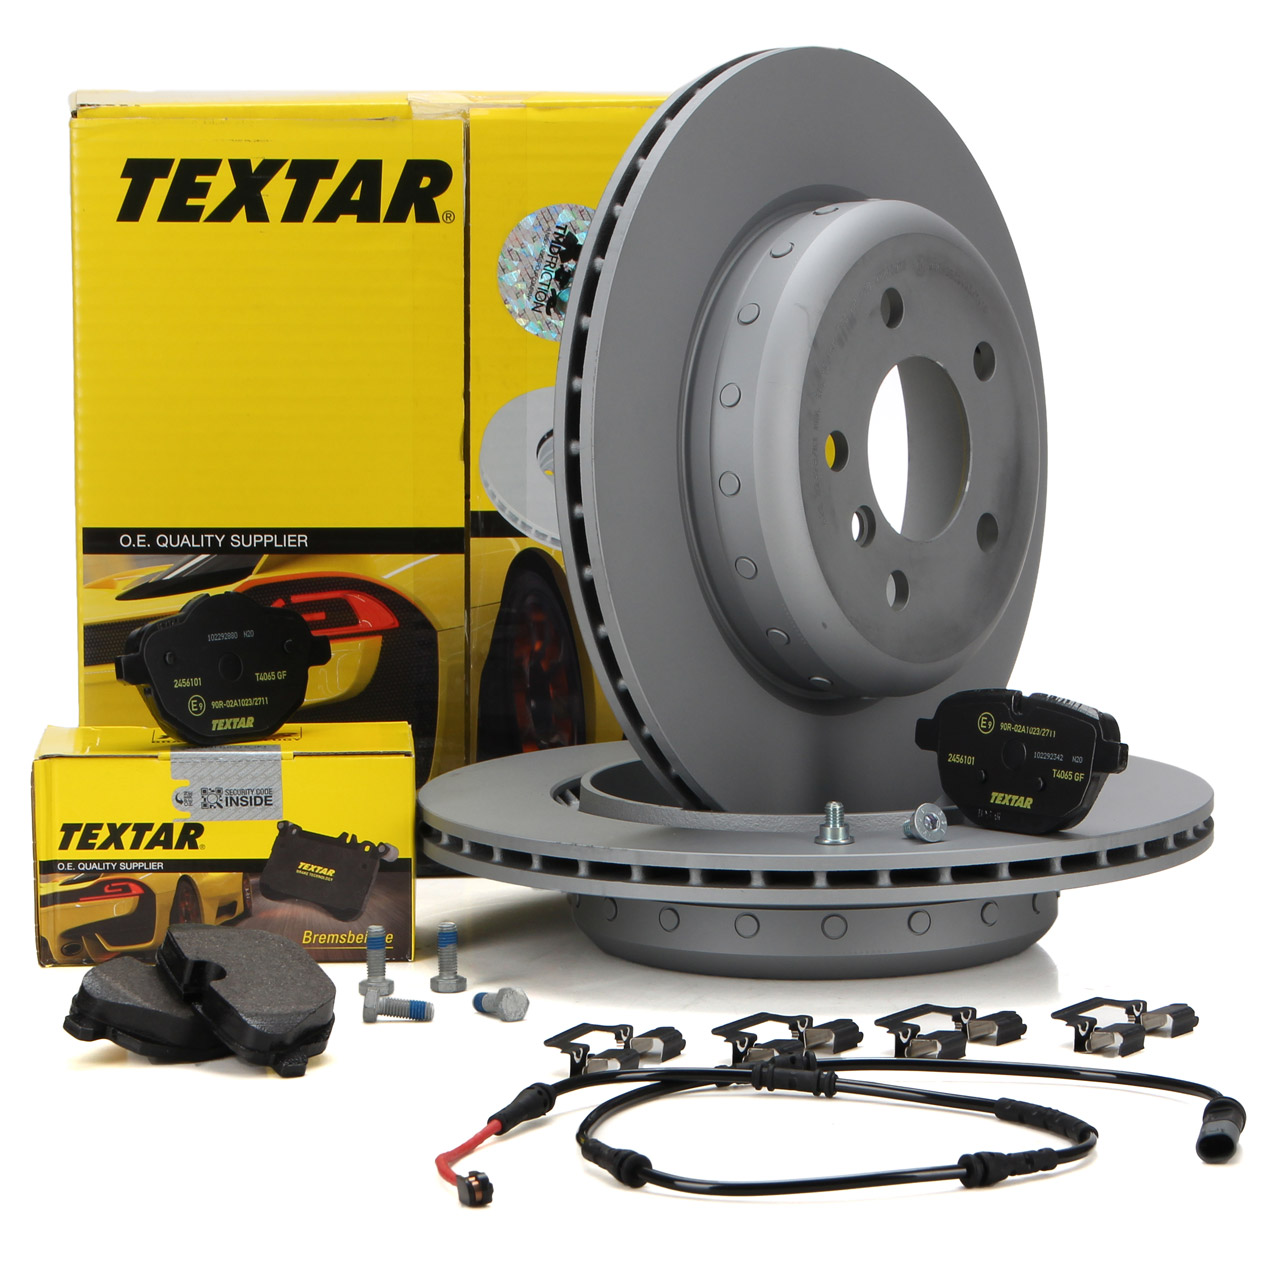 TEXTAR Bremsen Sets - 92265925, 2456101, A098167 